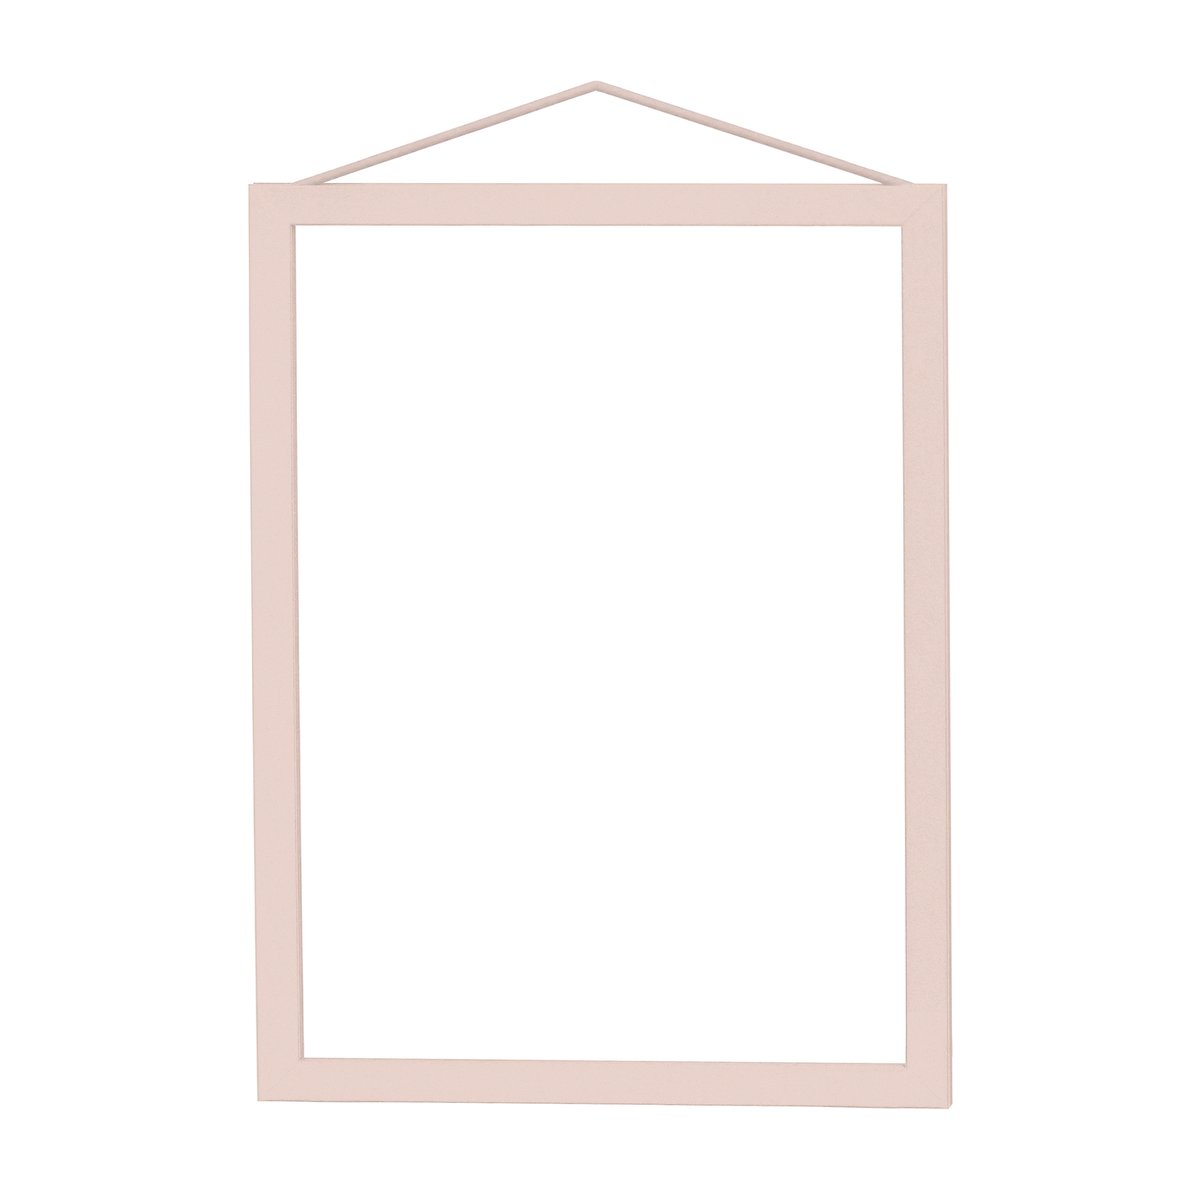 MOEBE Moebe kehys A5 16,5 x 22,7 cm Transparent Pink